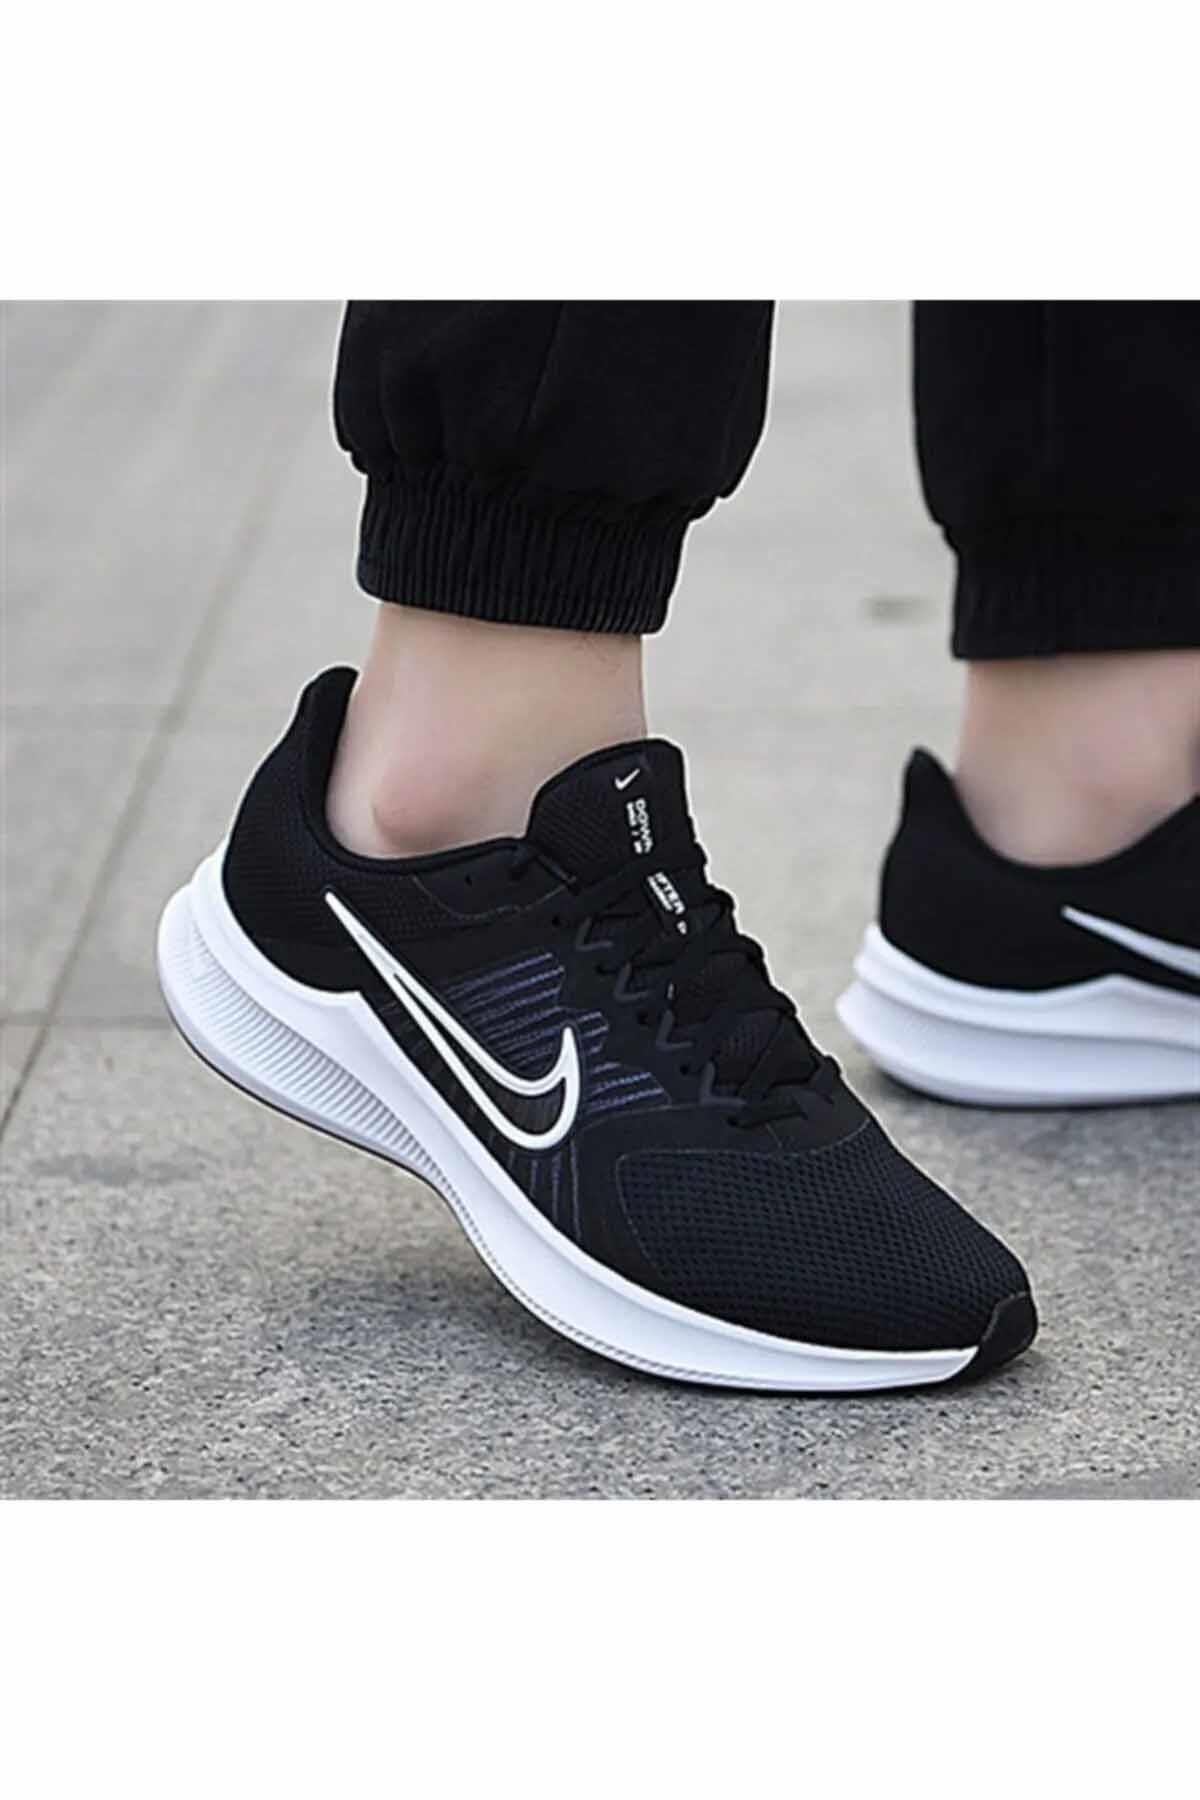 Nike Downshifter B1 Erkek Yürüyüş Koşu Ayakkabı Cw3411-006-1-siyah